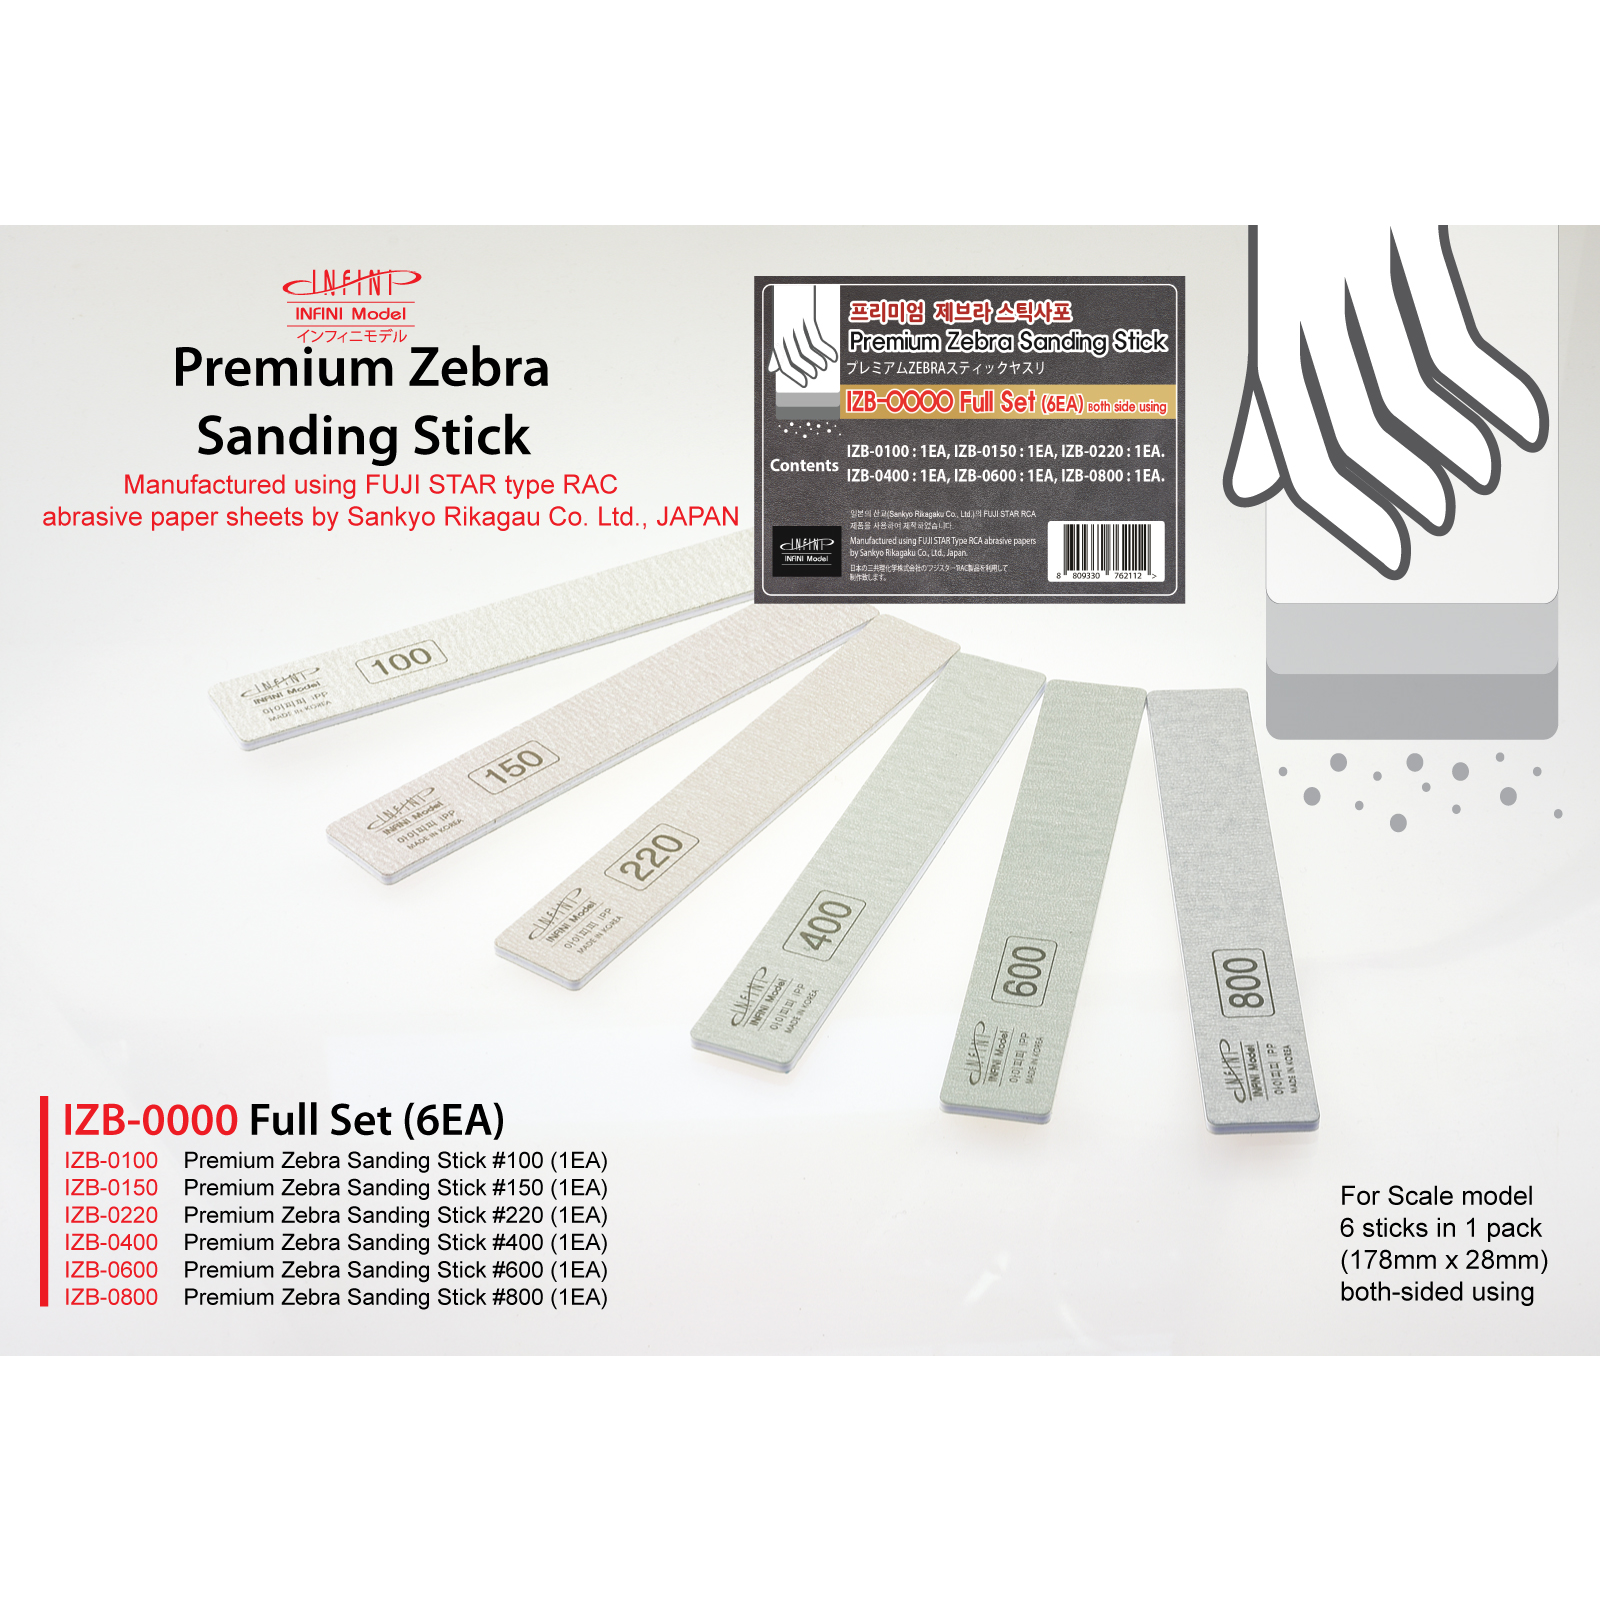 BJD OOAK Premium Zebre Sanding Stick Set IZB-0100 2 EA Infini 